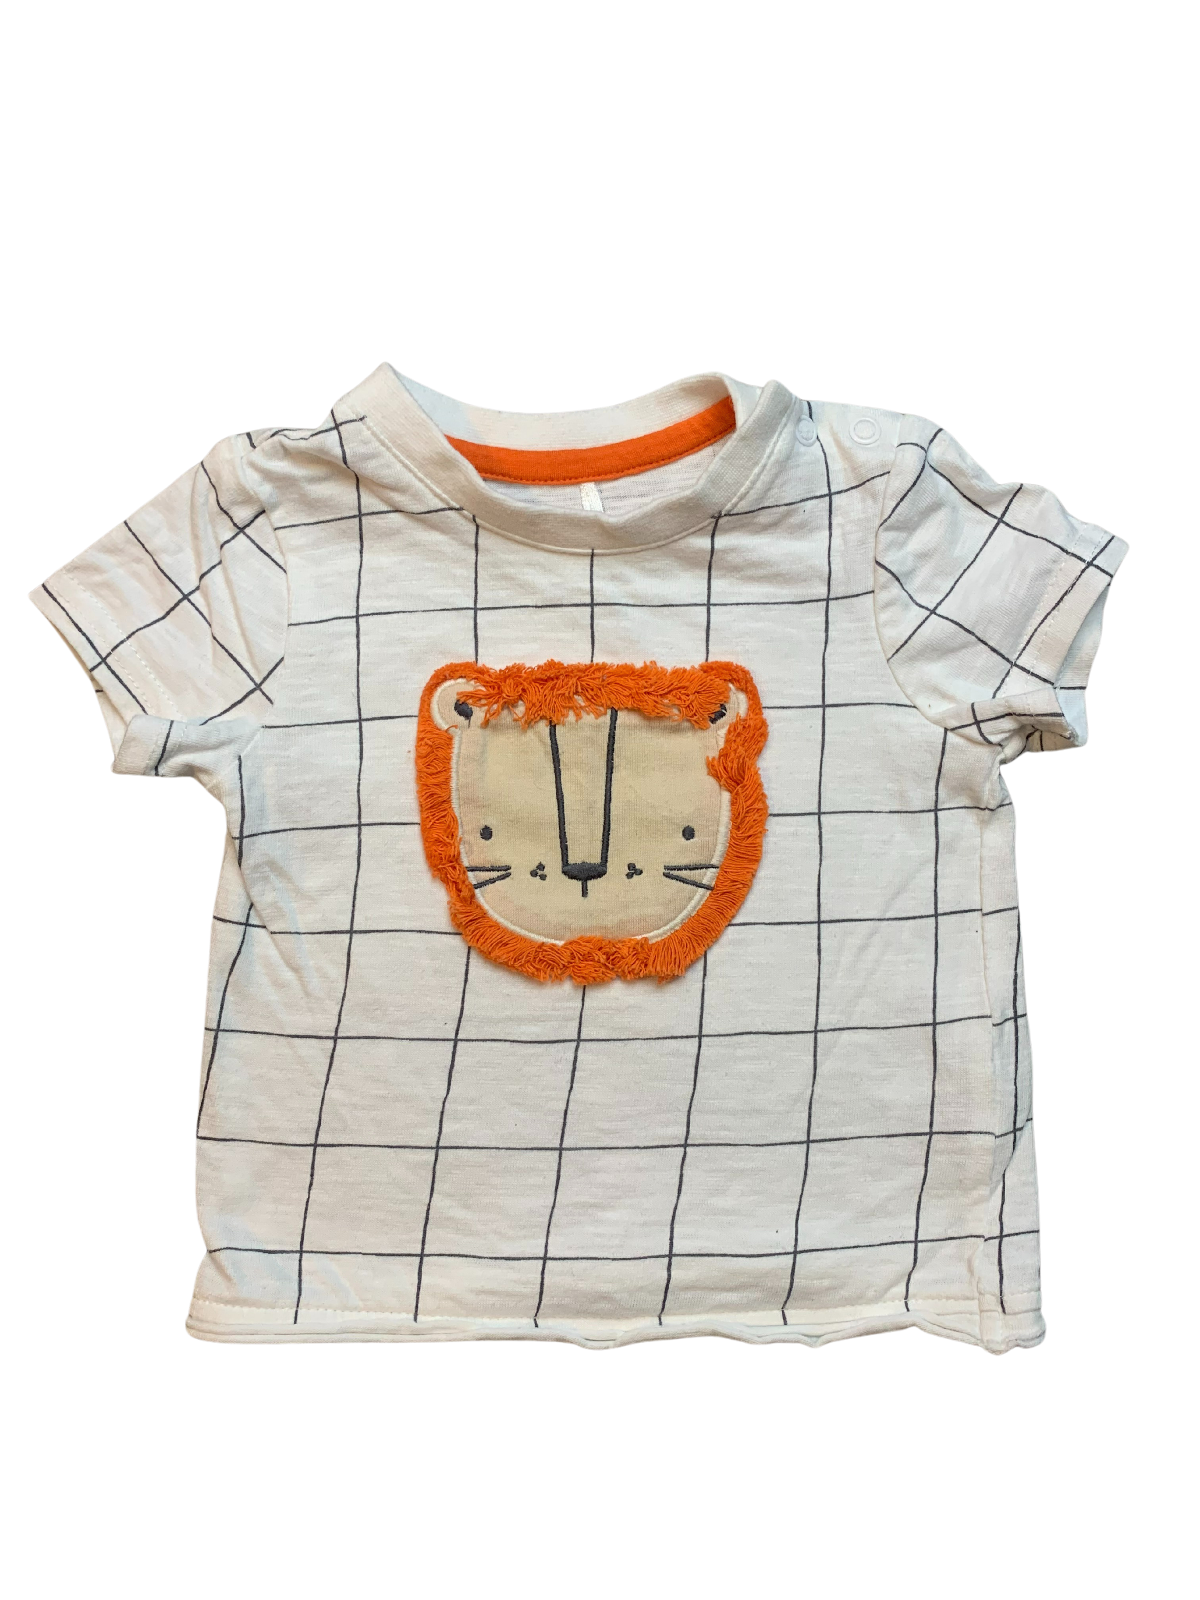 Tu Lion T Shirt Baby Boy 3-6 Months